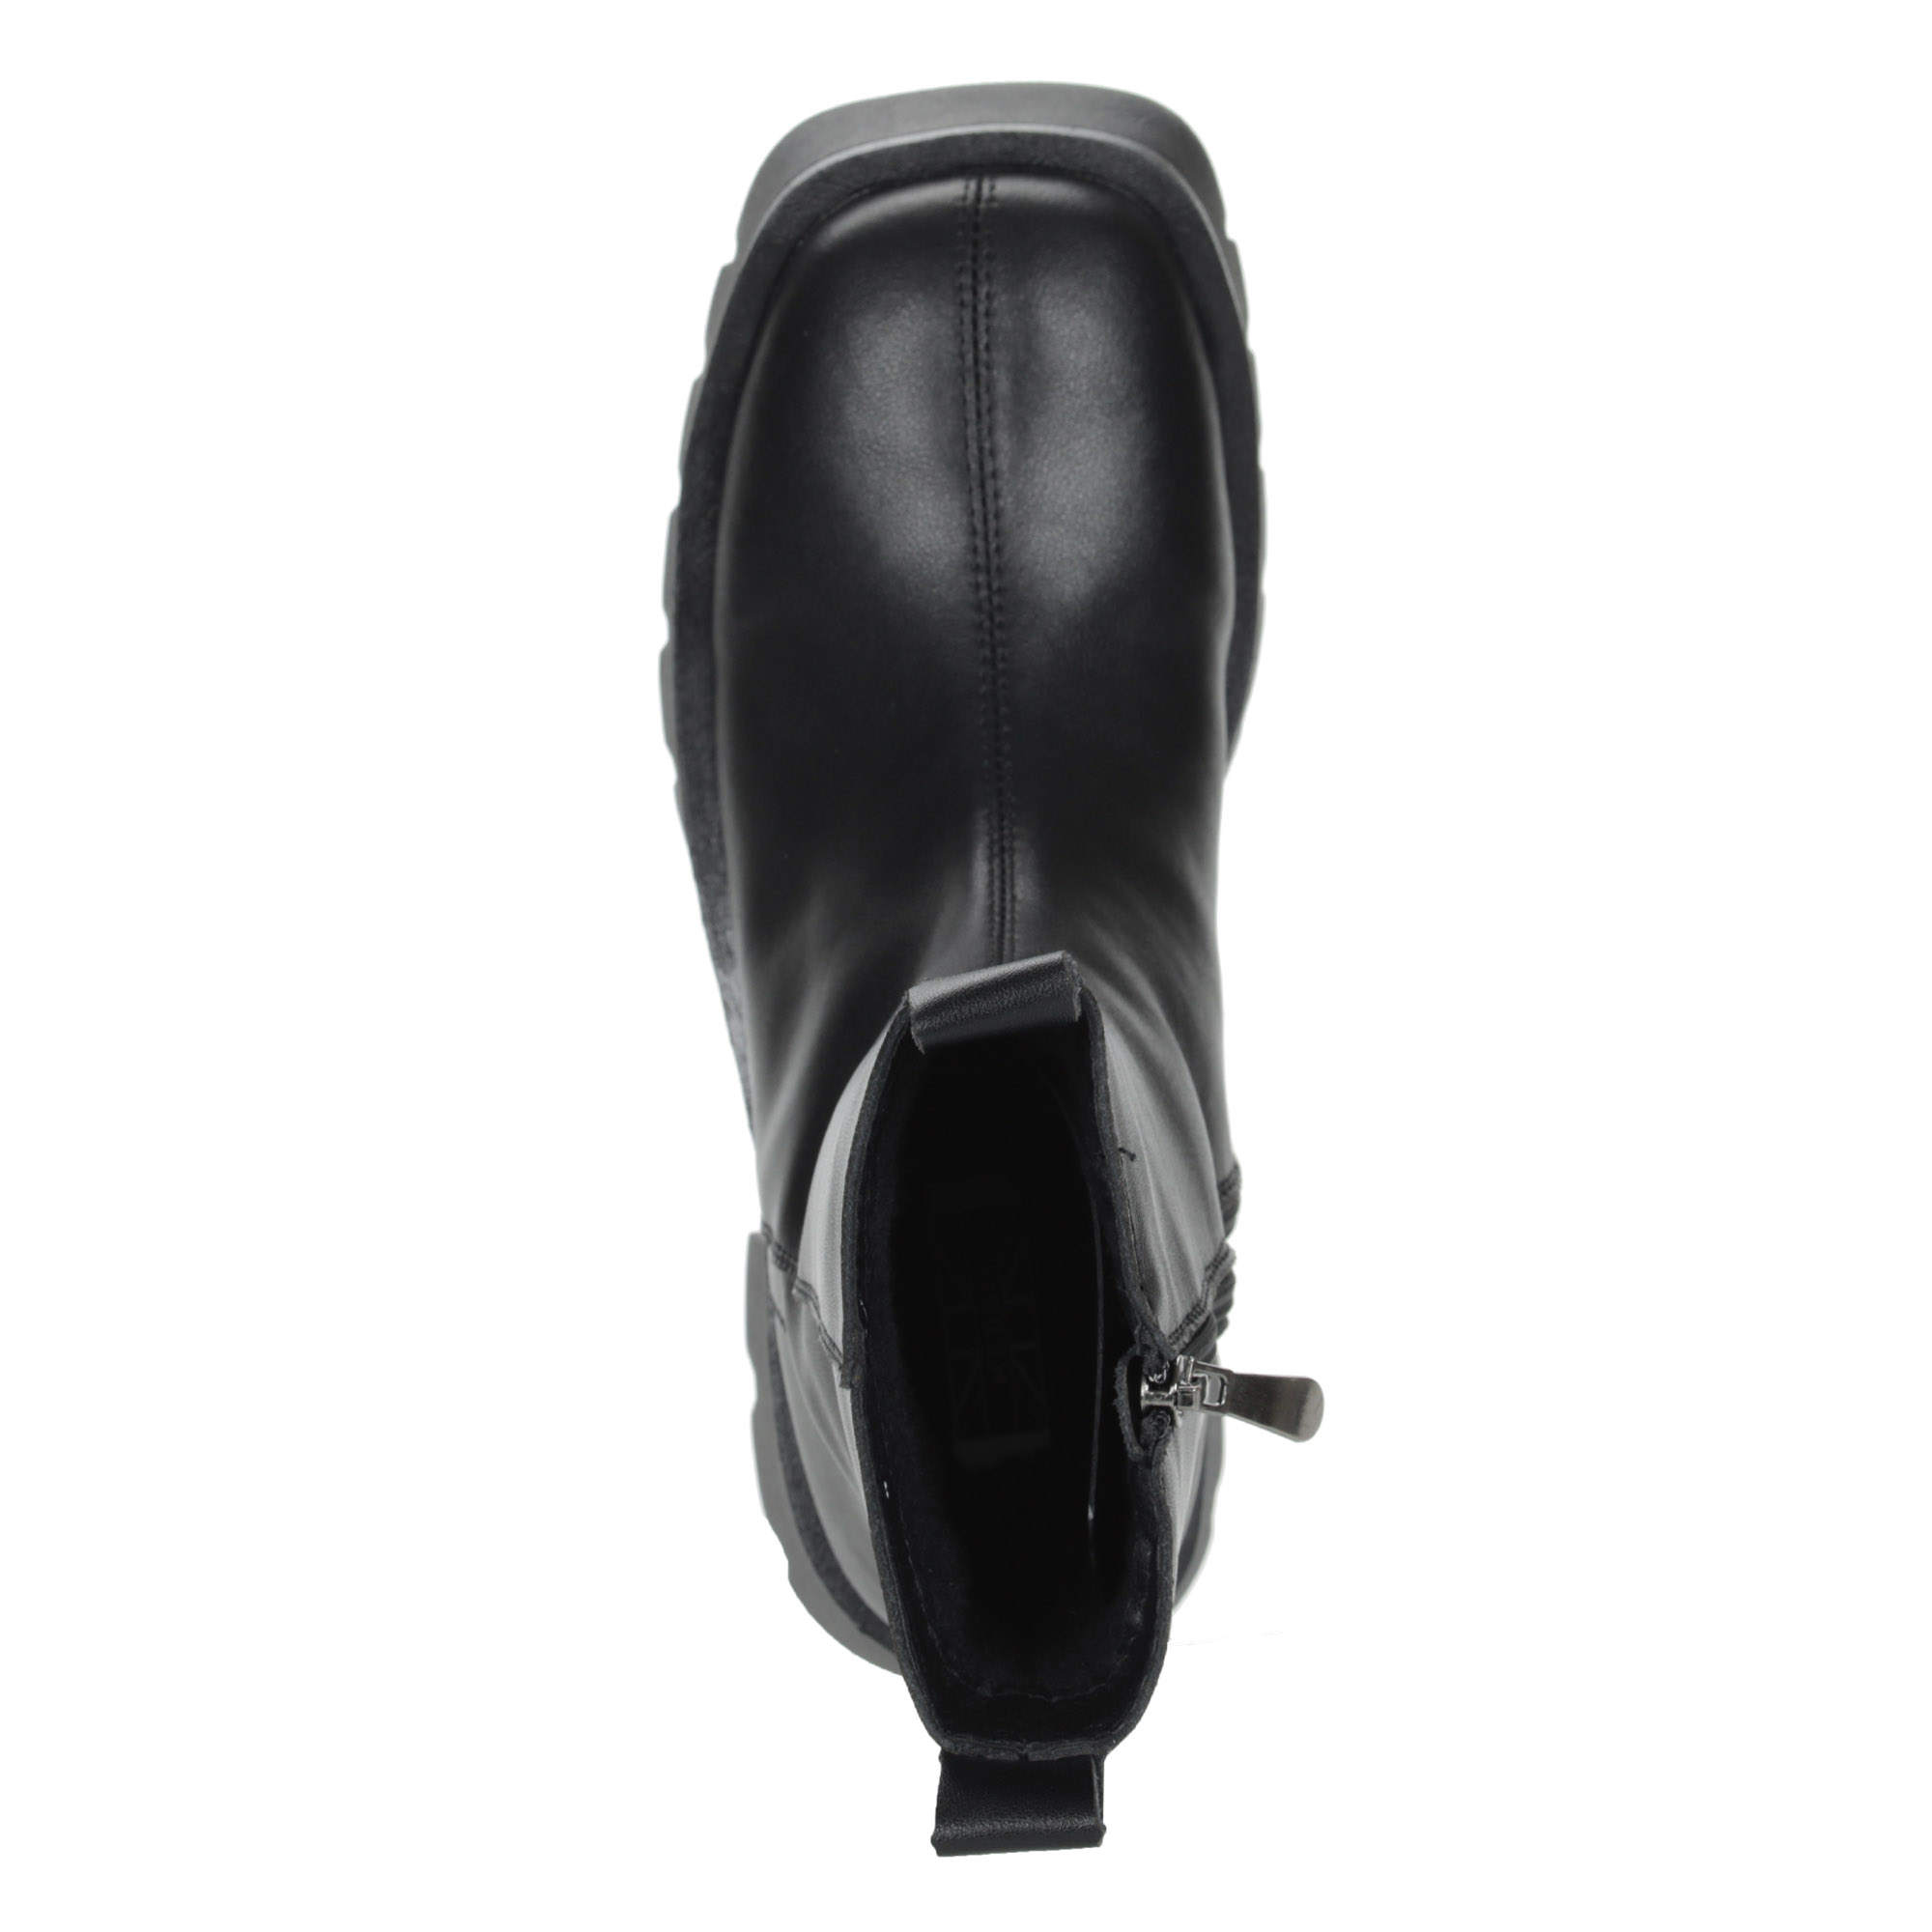 Черные ботинки из кожи на шнурках на подкладке из экошерсти на утолщенной подошве KEDDO, размер 38, цвет черный - фото 7